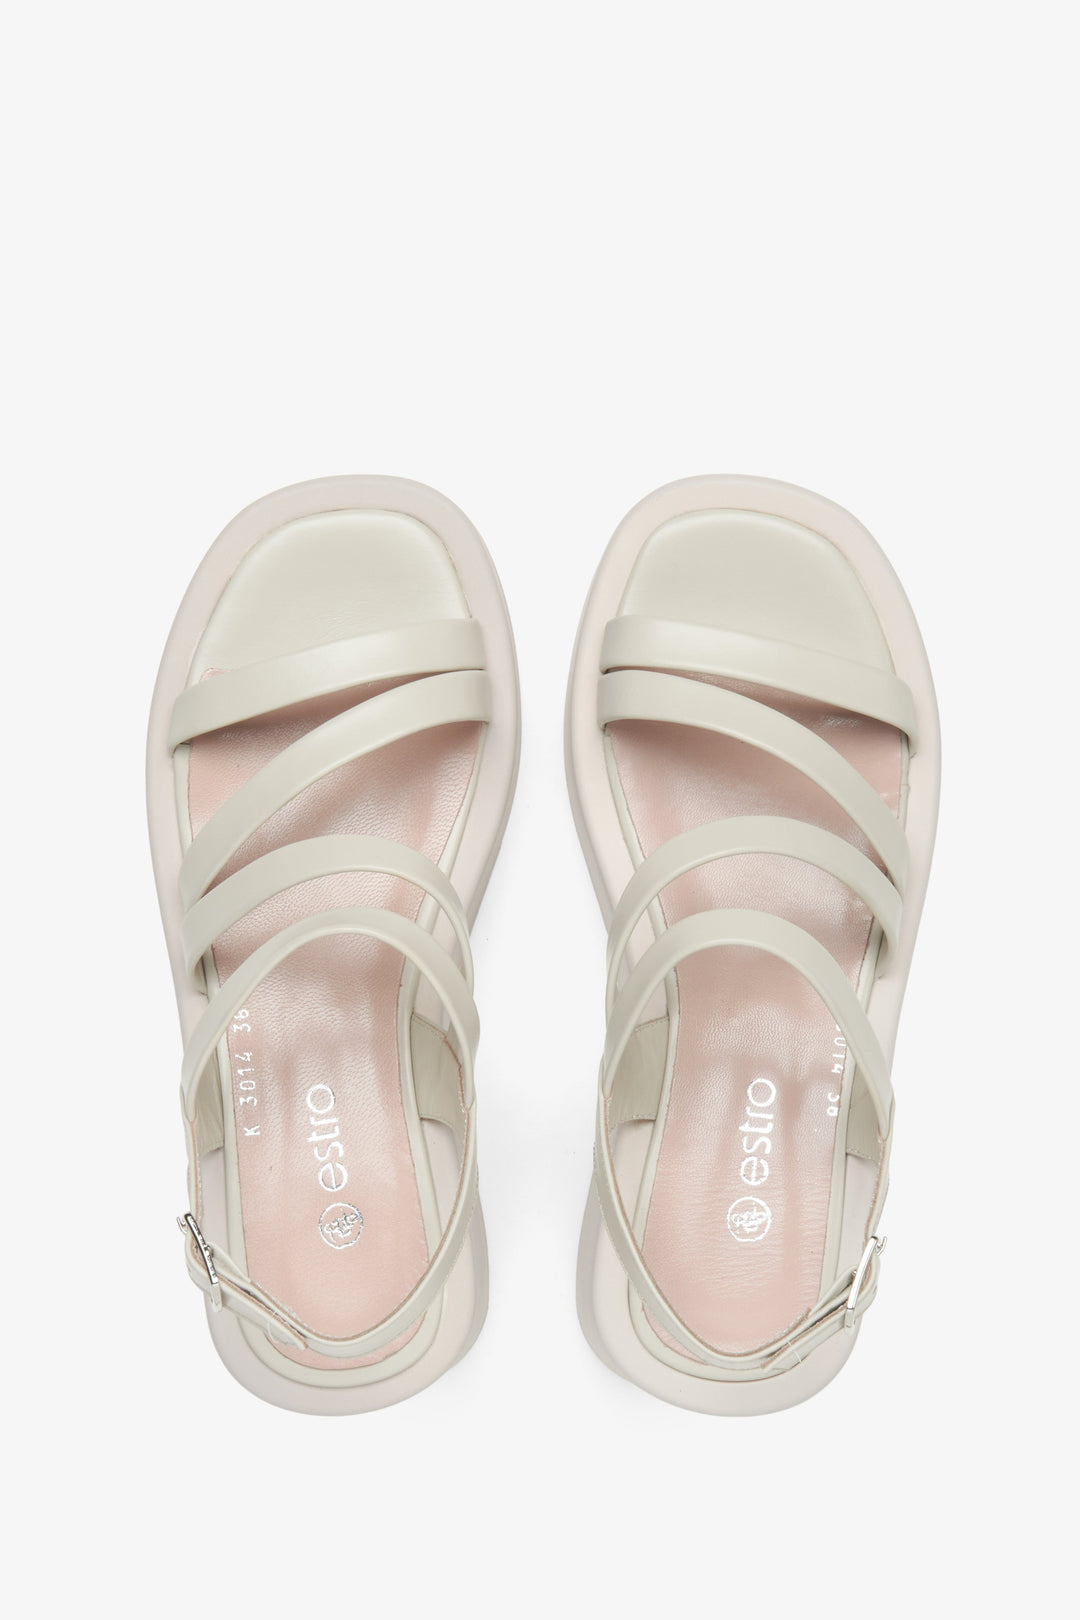 Skórzane jasnobeżowe sandały damskie na koturnie - prezentacja modelu z góry.